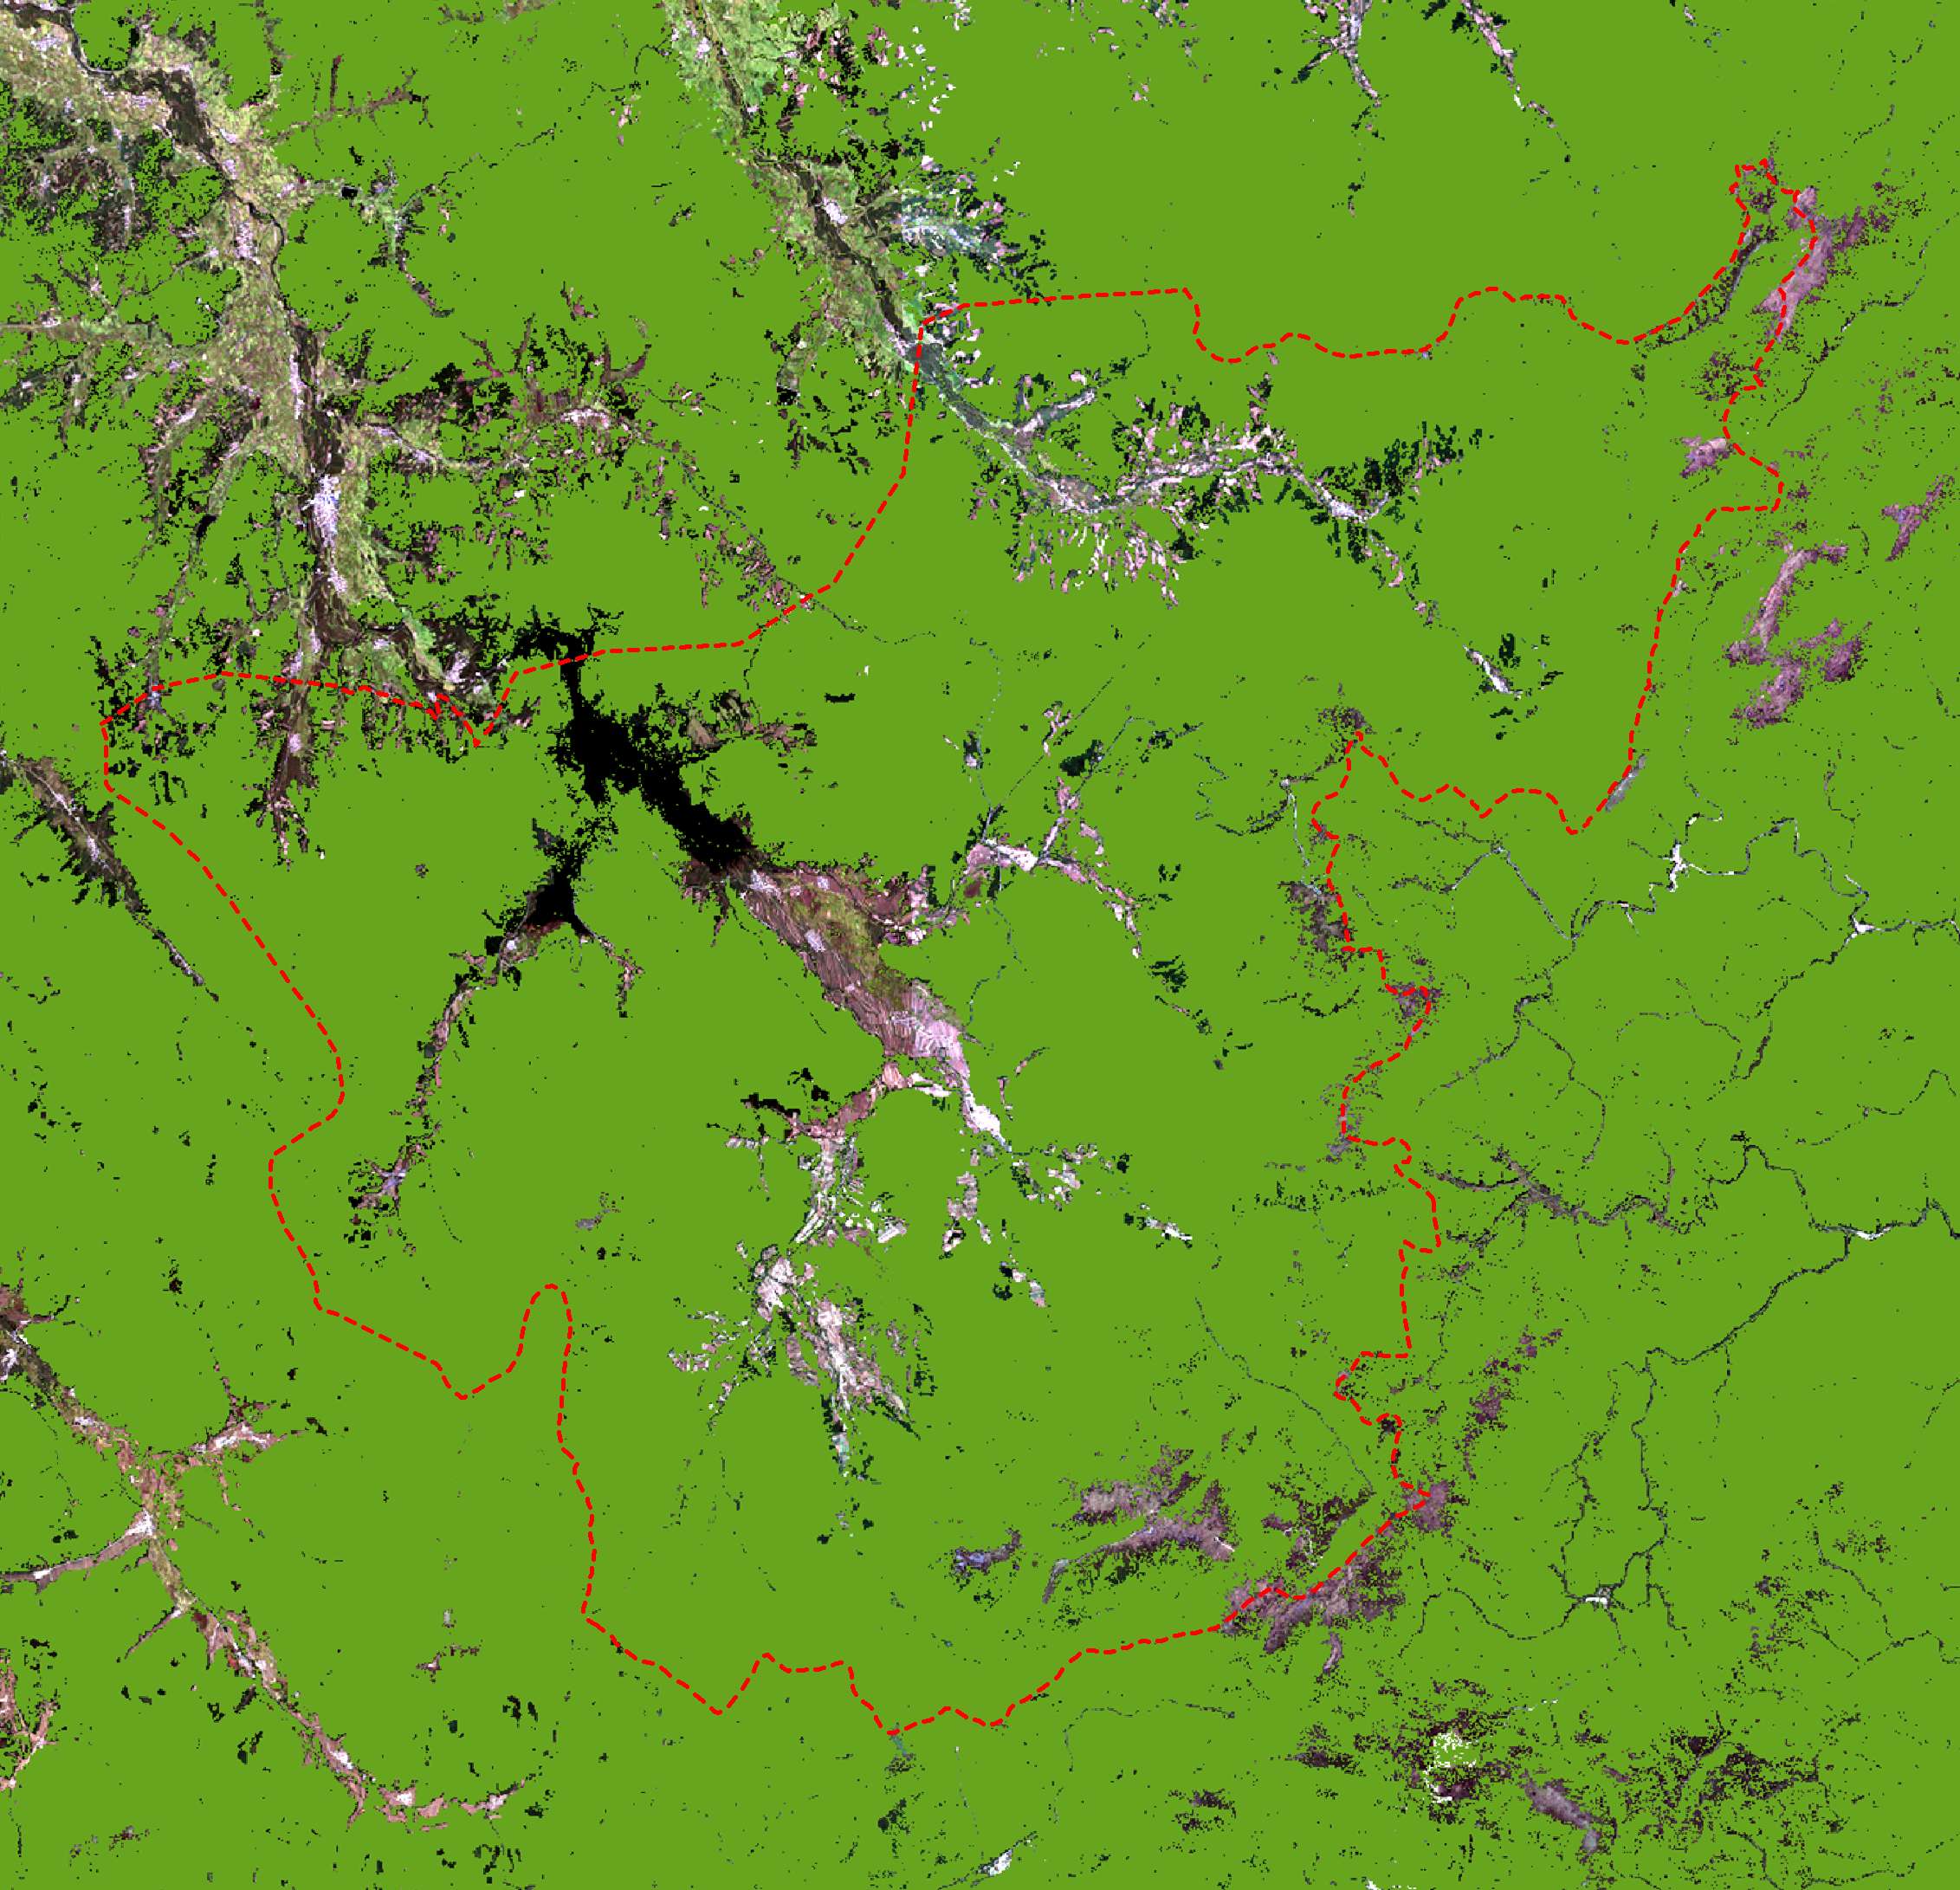 山河屯林业局林区2019.09.23拍摄卫星图-源自北京亿景图